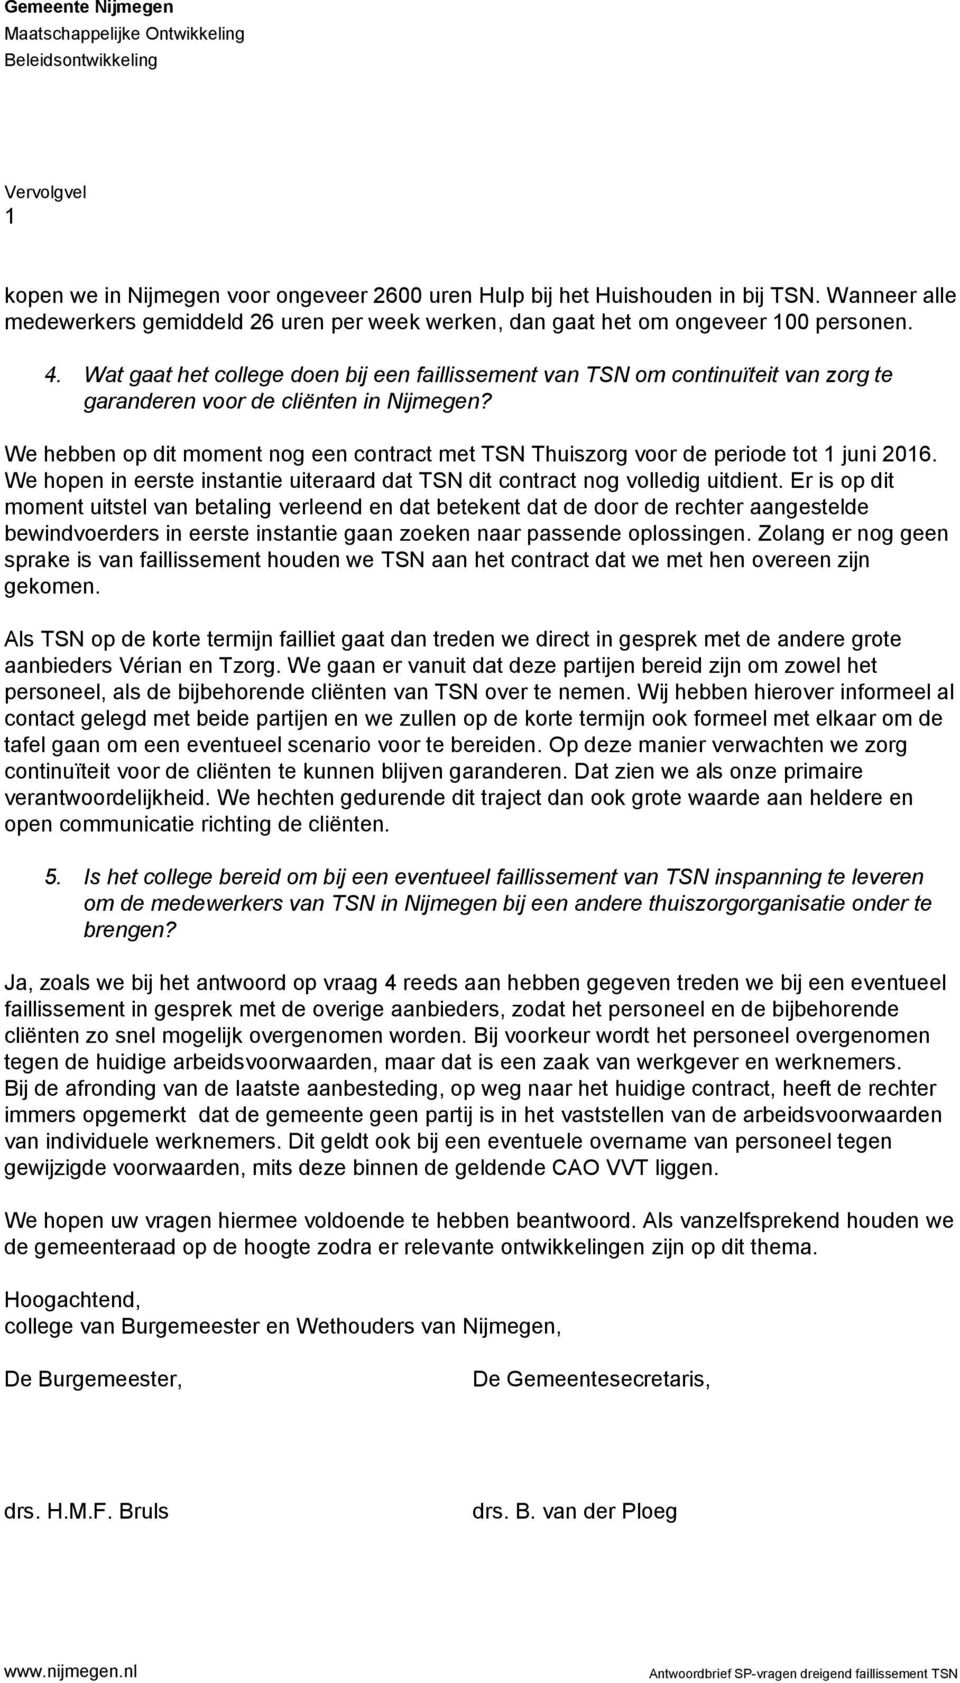 Wat gaat het college doen bij een faillissement van TSN om continuïteit van zorg te garanderen voor de cliënten in Nijmegen?